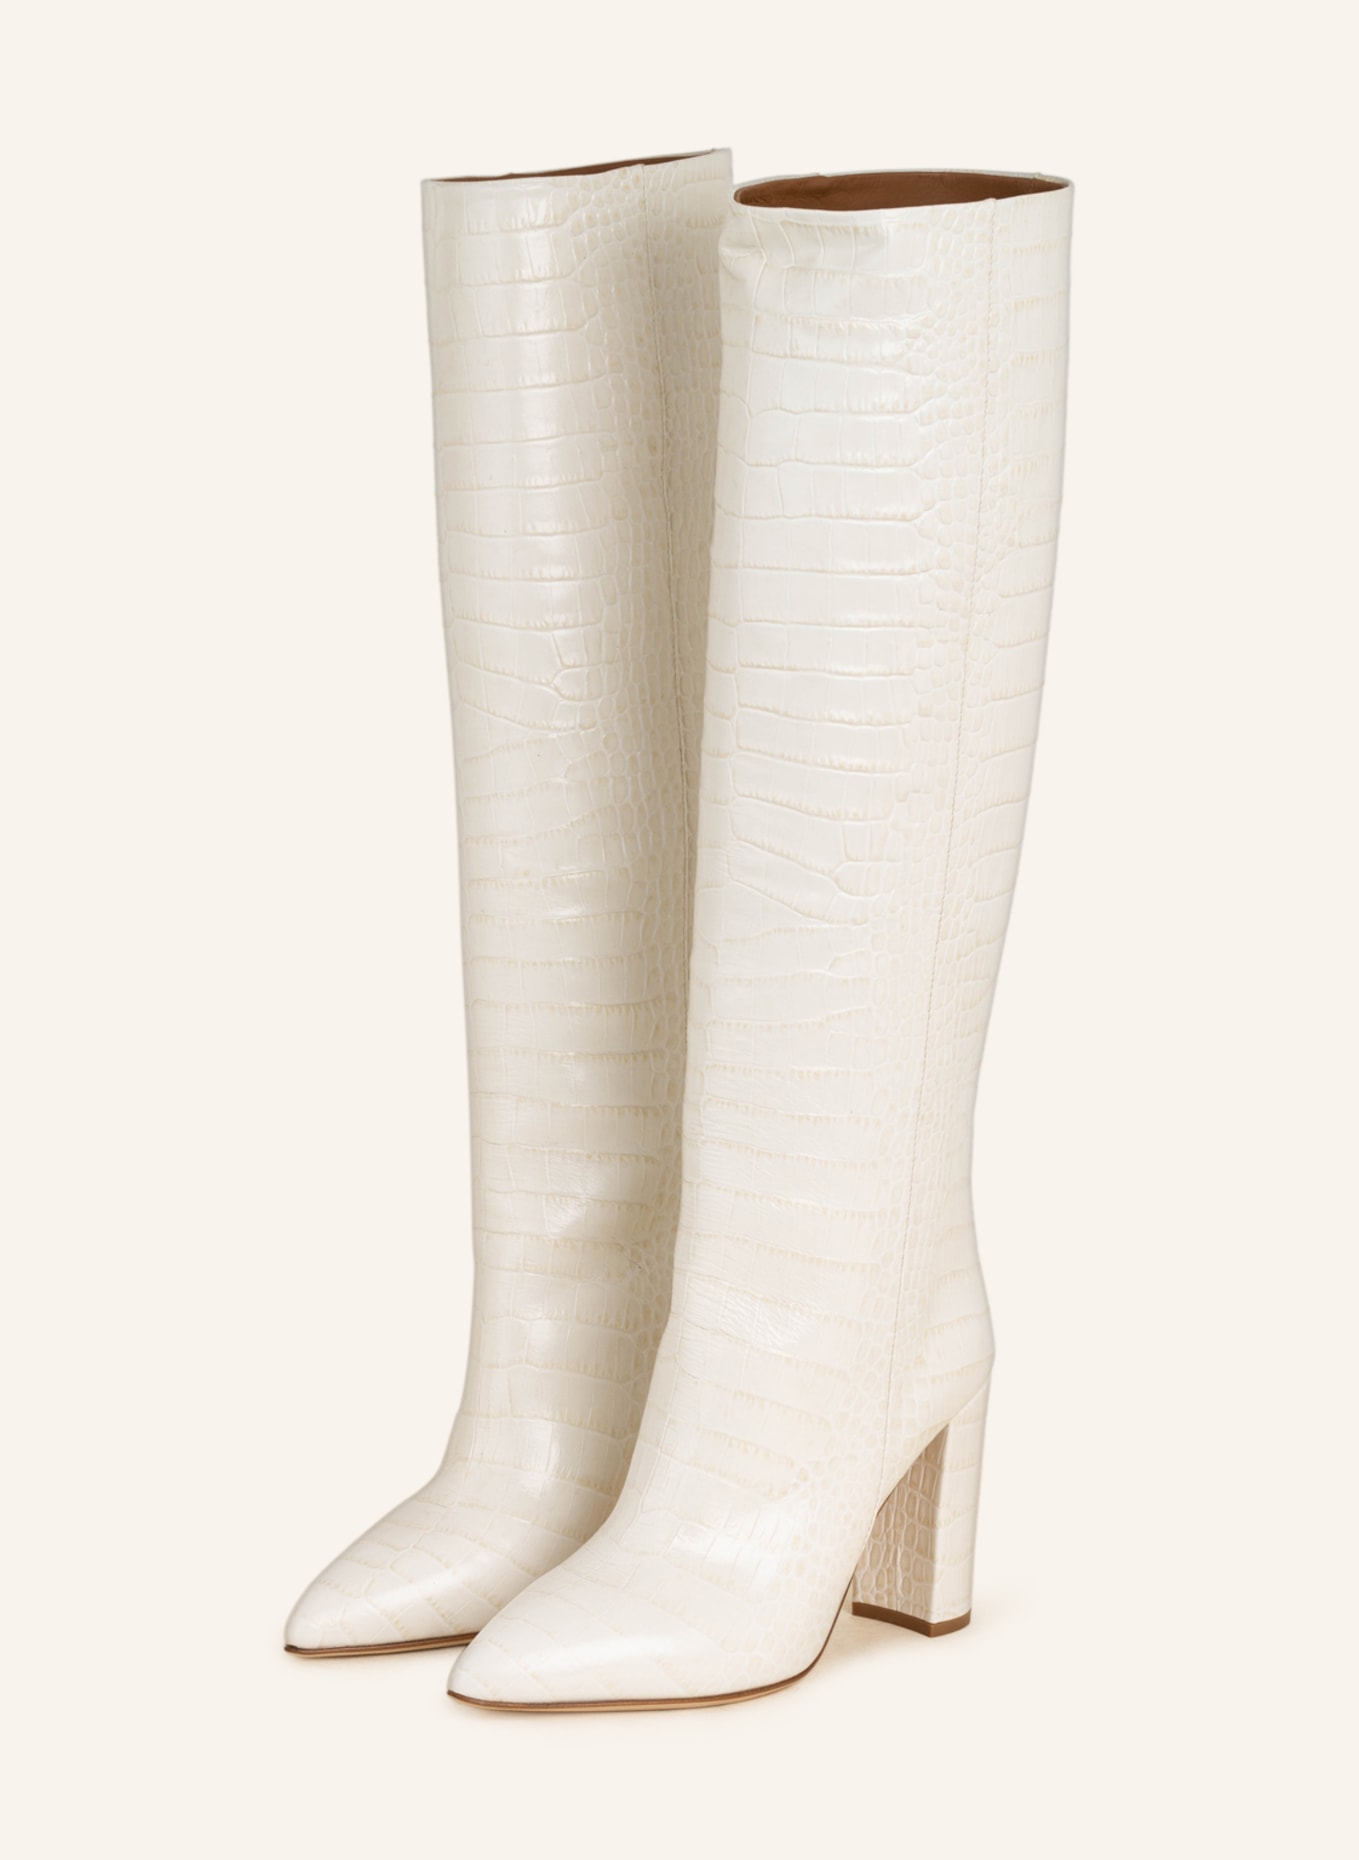 PARIS TEXAS Boots, Color: ECRU (Image 1)